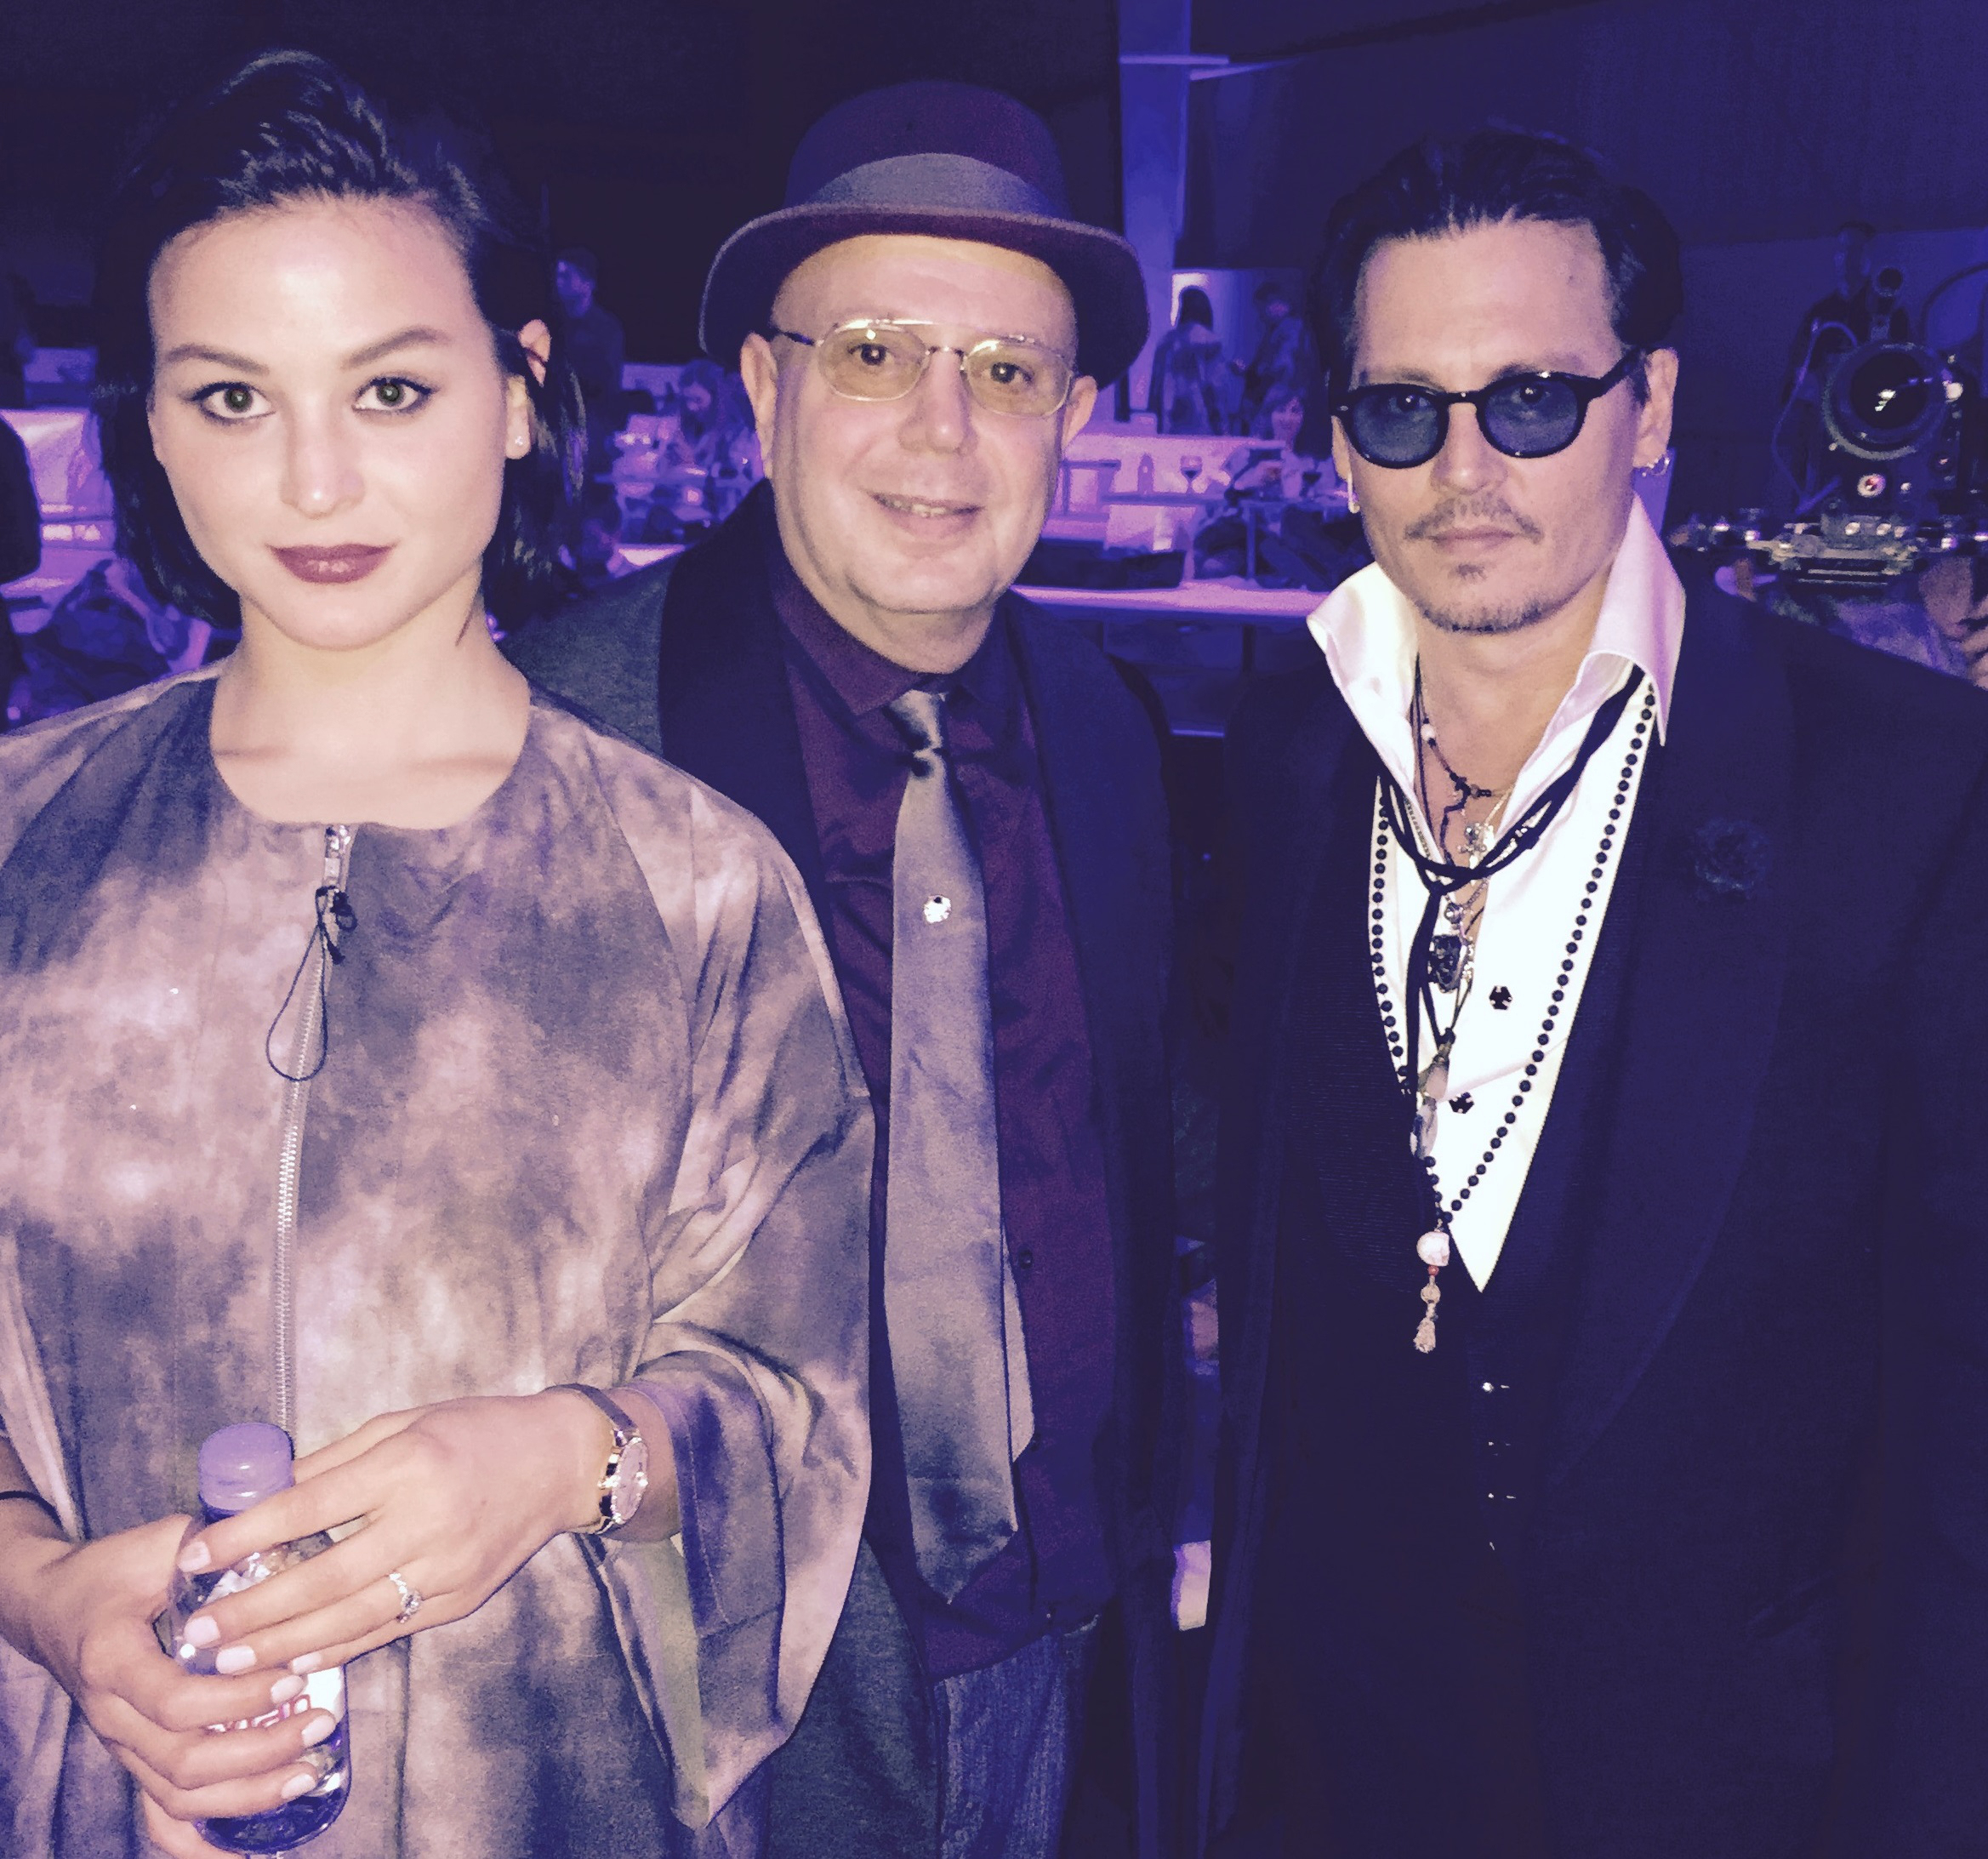 Sara Von Kienegger with Johnny Depp and Edward Bass